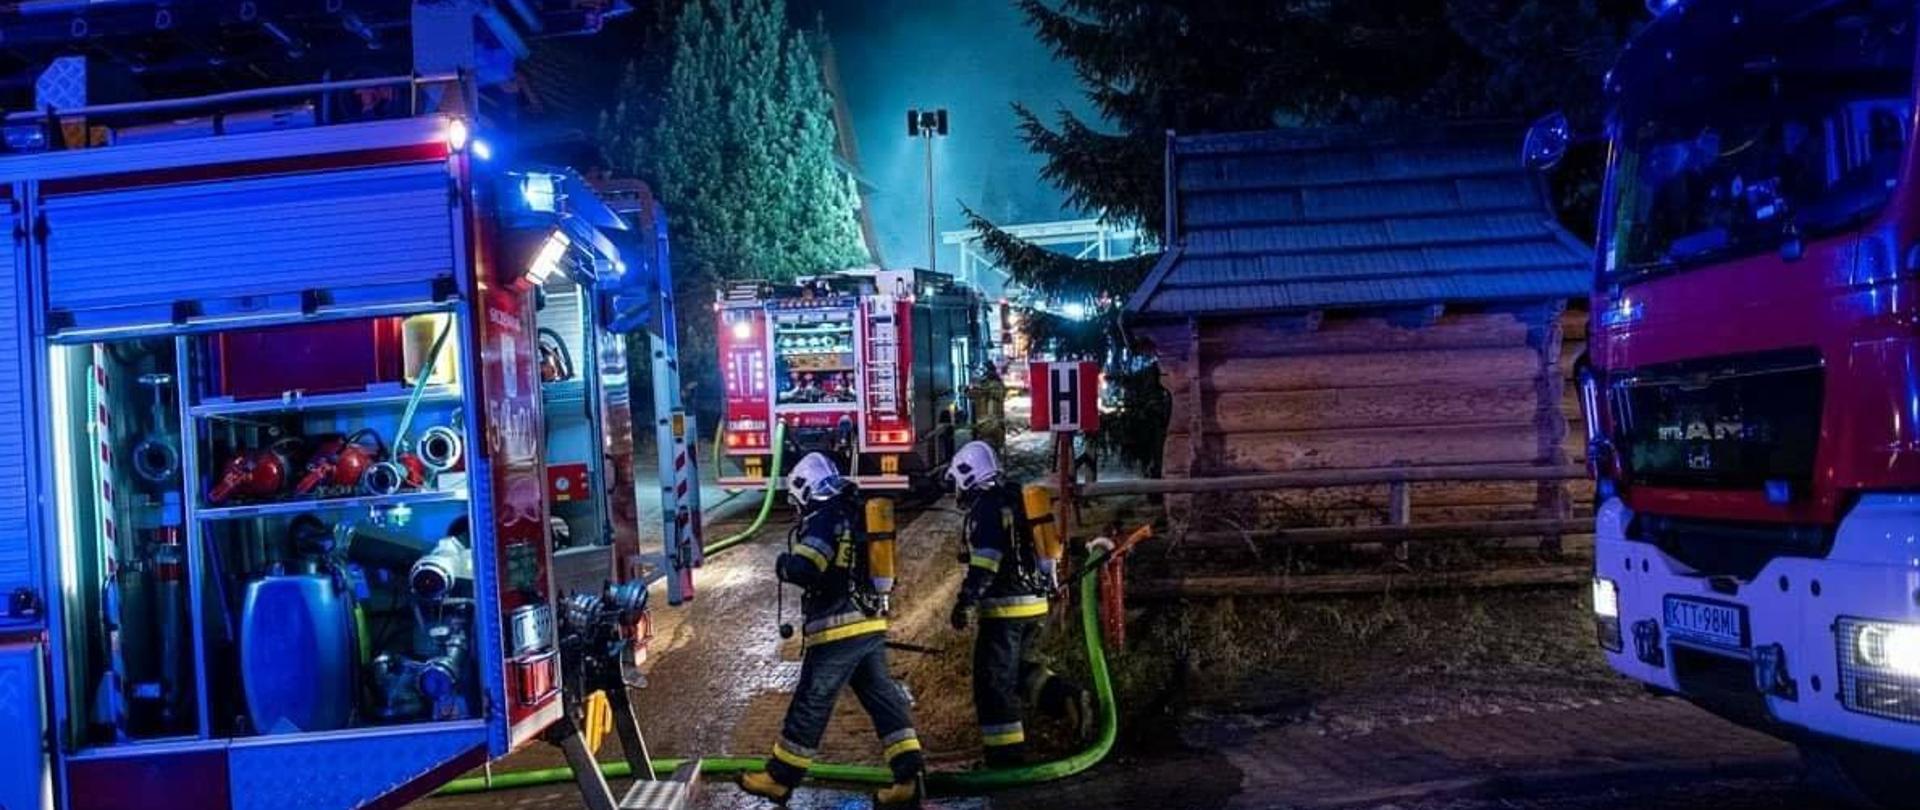 Zdjęcie przedstawia działania straży pożarnej podczas pożaru w Kościelisku 9 grudnia 2020 roku. Na zdjęciu widać wozy strażackie, strażaków w sprzęcie ochrony dróg oddechowych. W tle widać unoszący się dym nad budynkami. Tło ciemne z uwagi na wczesne poranne godzin y pożaru.